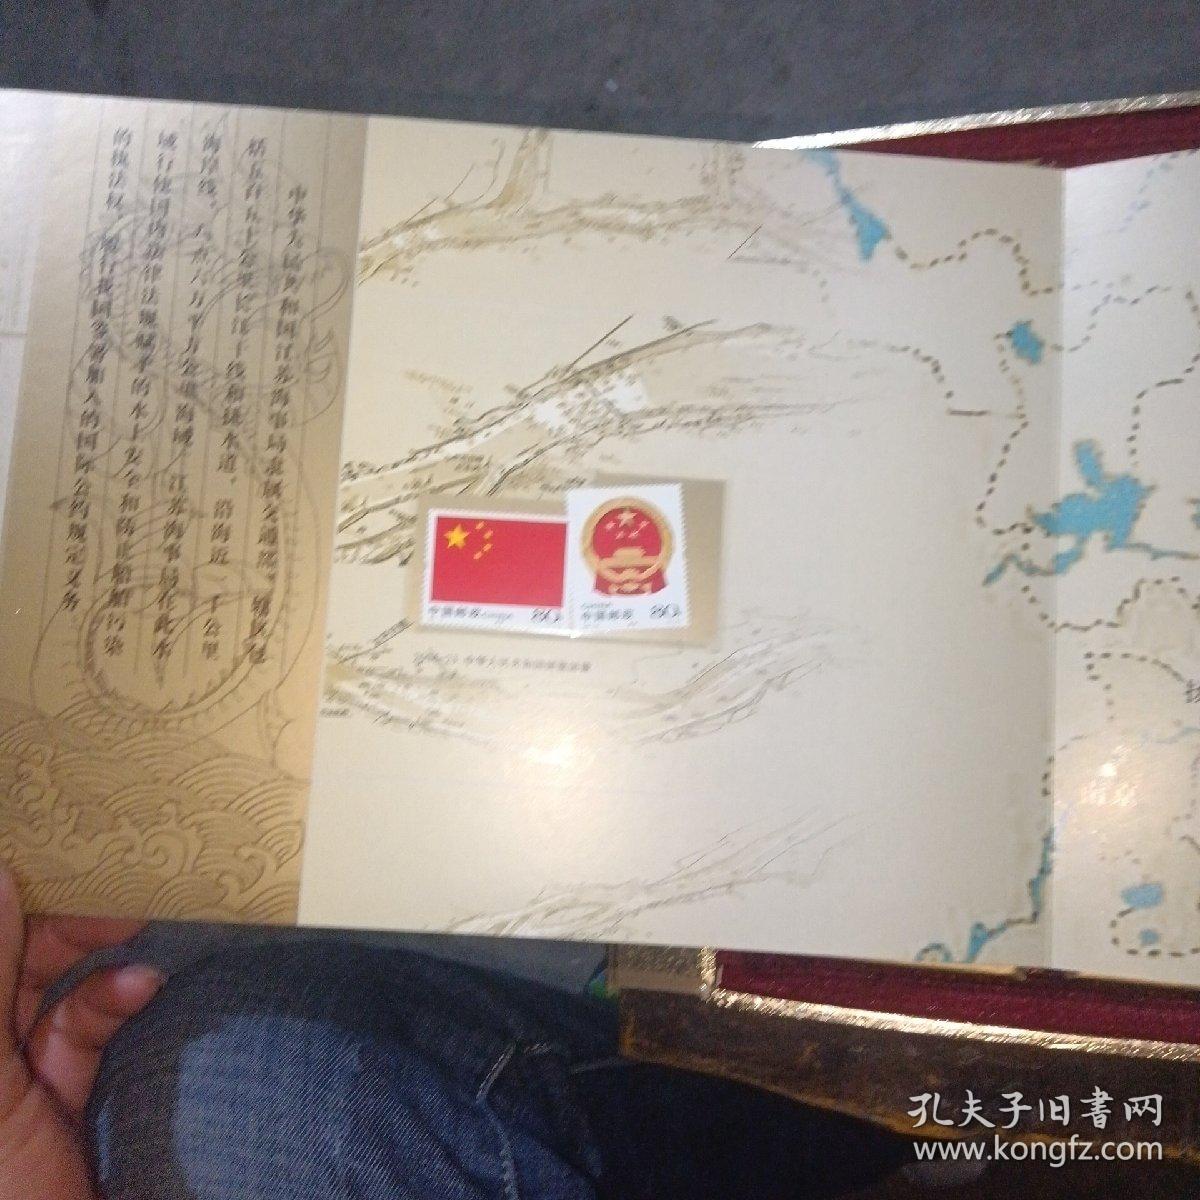 江苏海事/中华人民共和国江苏海事局成立五周年纪念。珍藏邮品册（全）